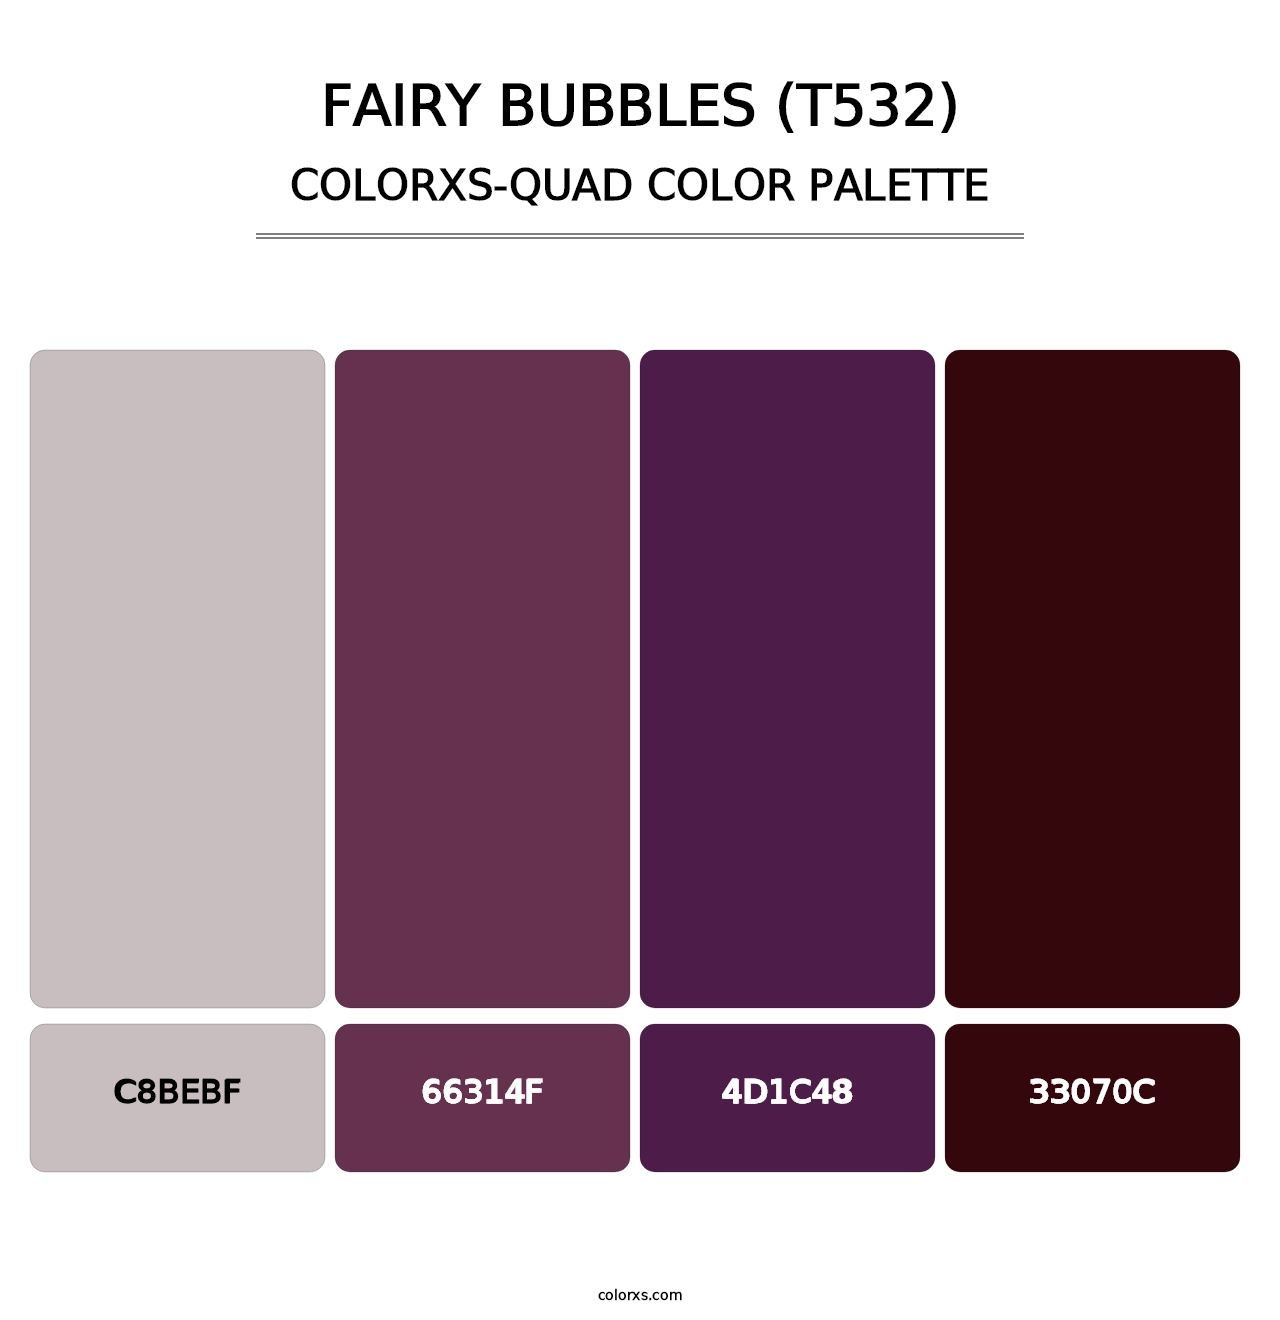 Fairy Bubbles (T532) - Colorxs Quad Palette